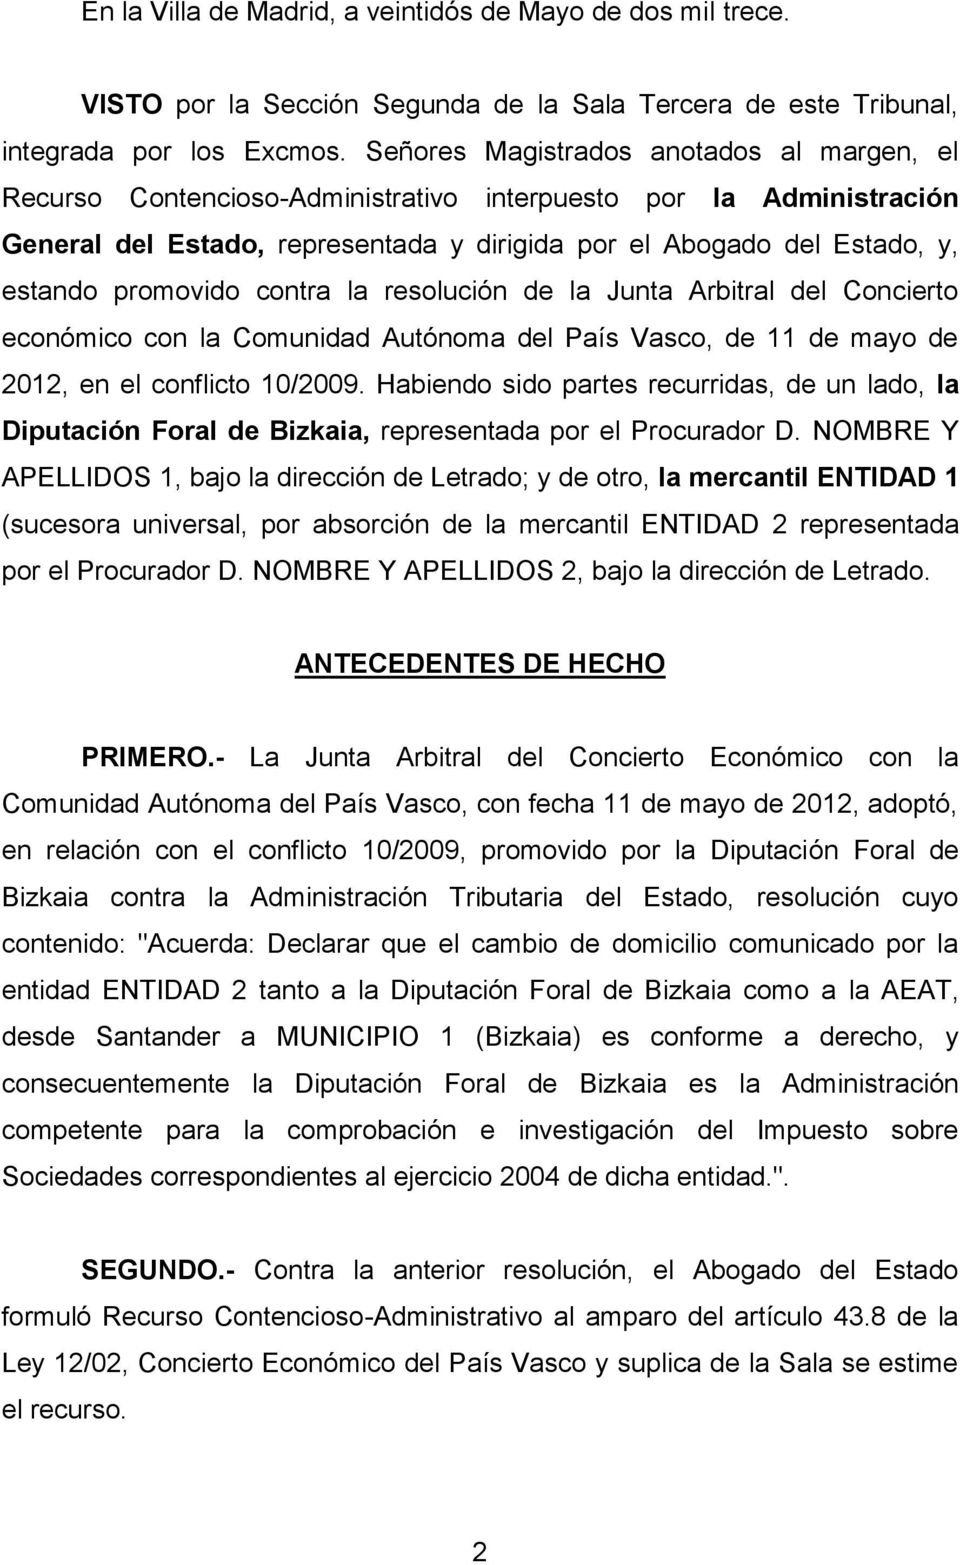 promovido contra la resolución de la Junta Arbitral del Concierto económico con la Comunidad Autónoma del País Vasco, de 11 de mayo de 2012, en el conflicto 10/2009.